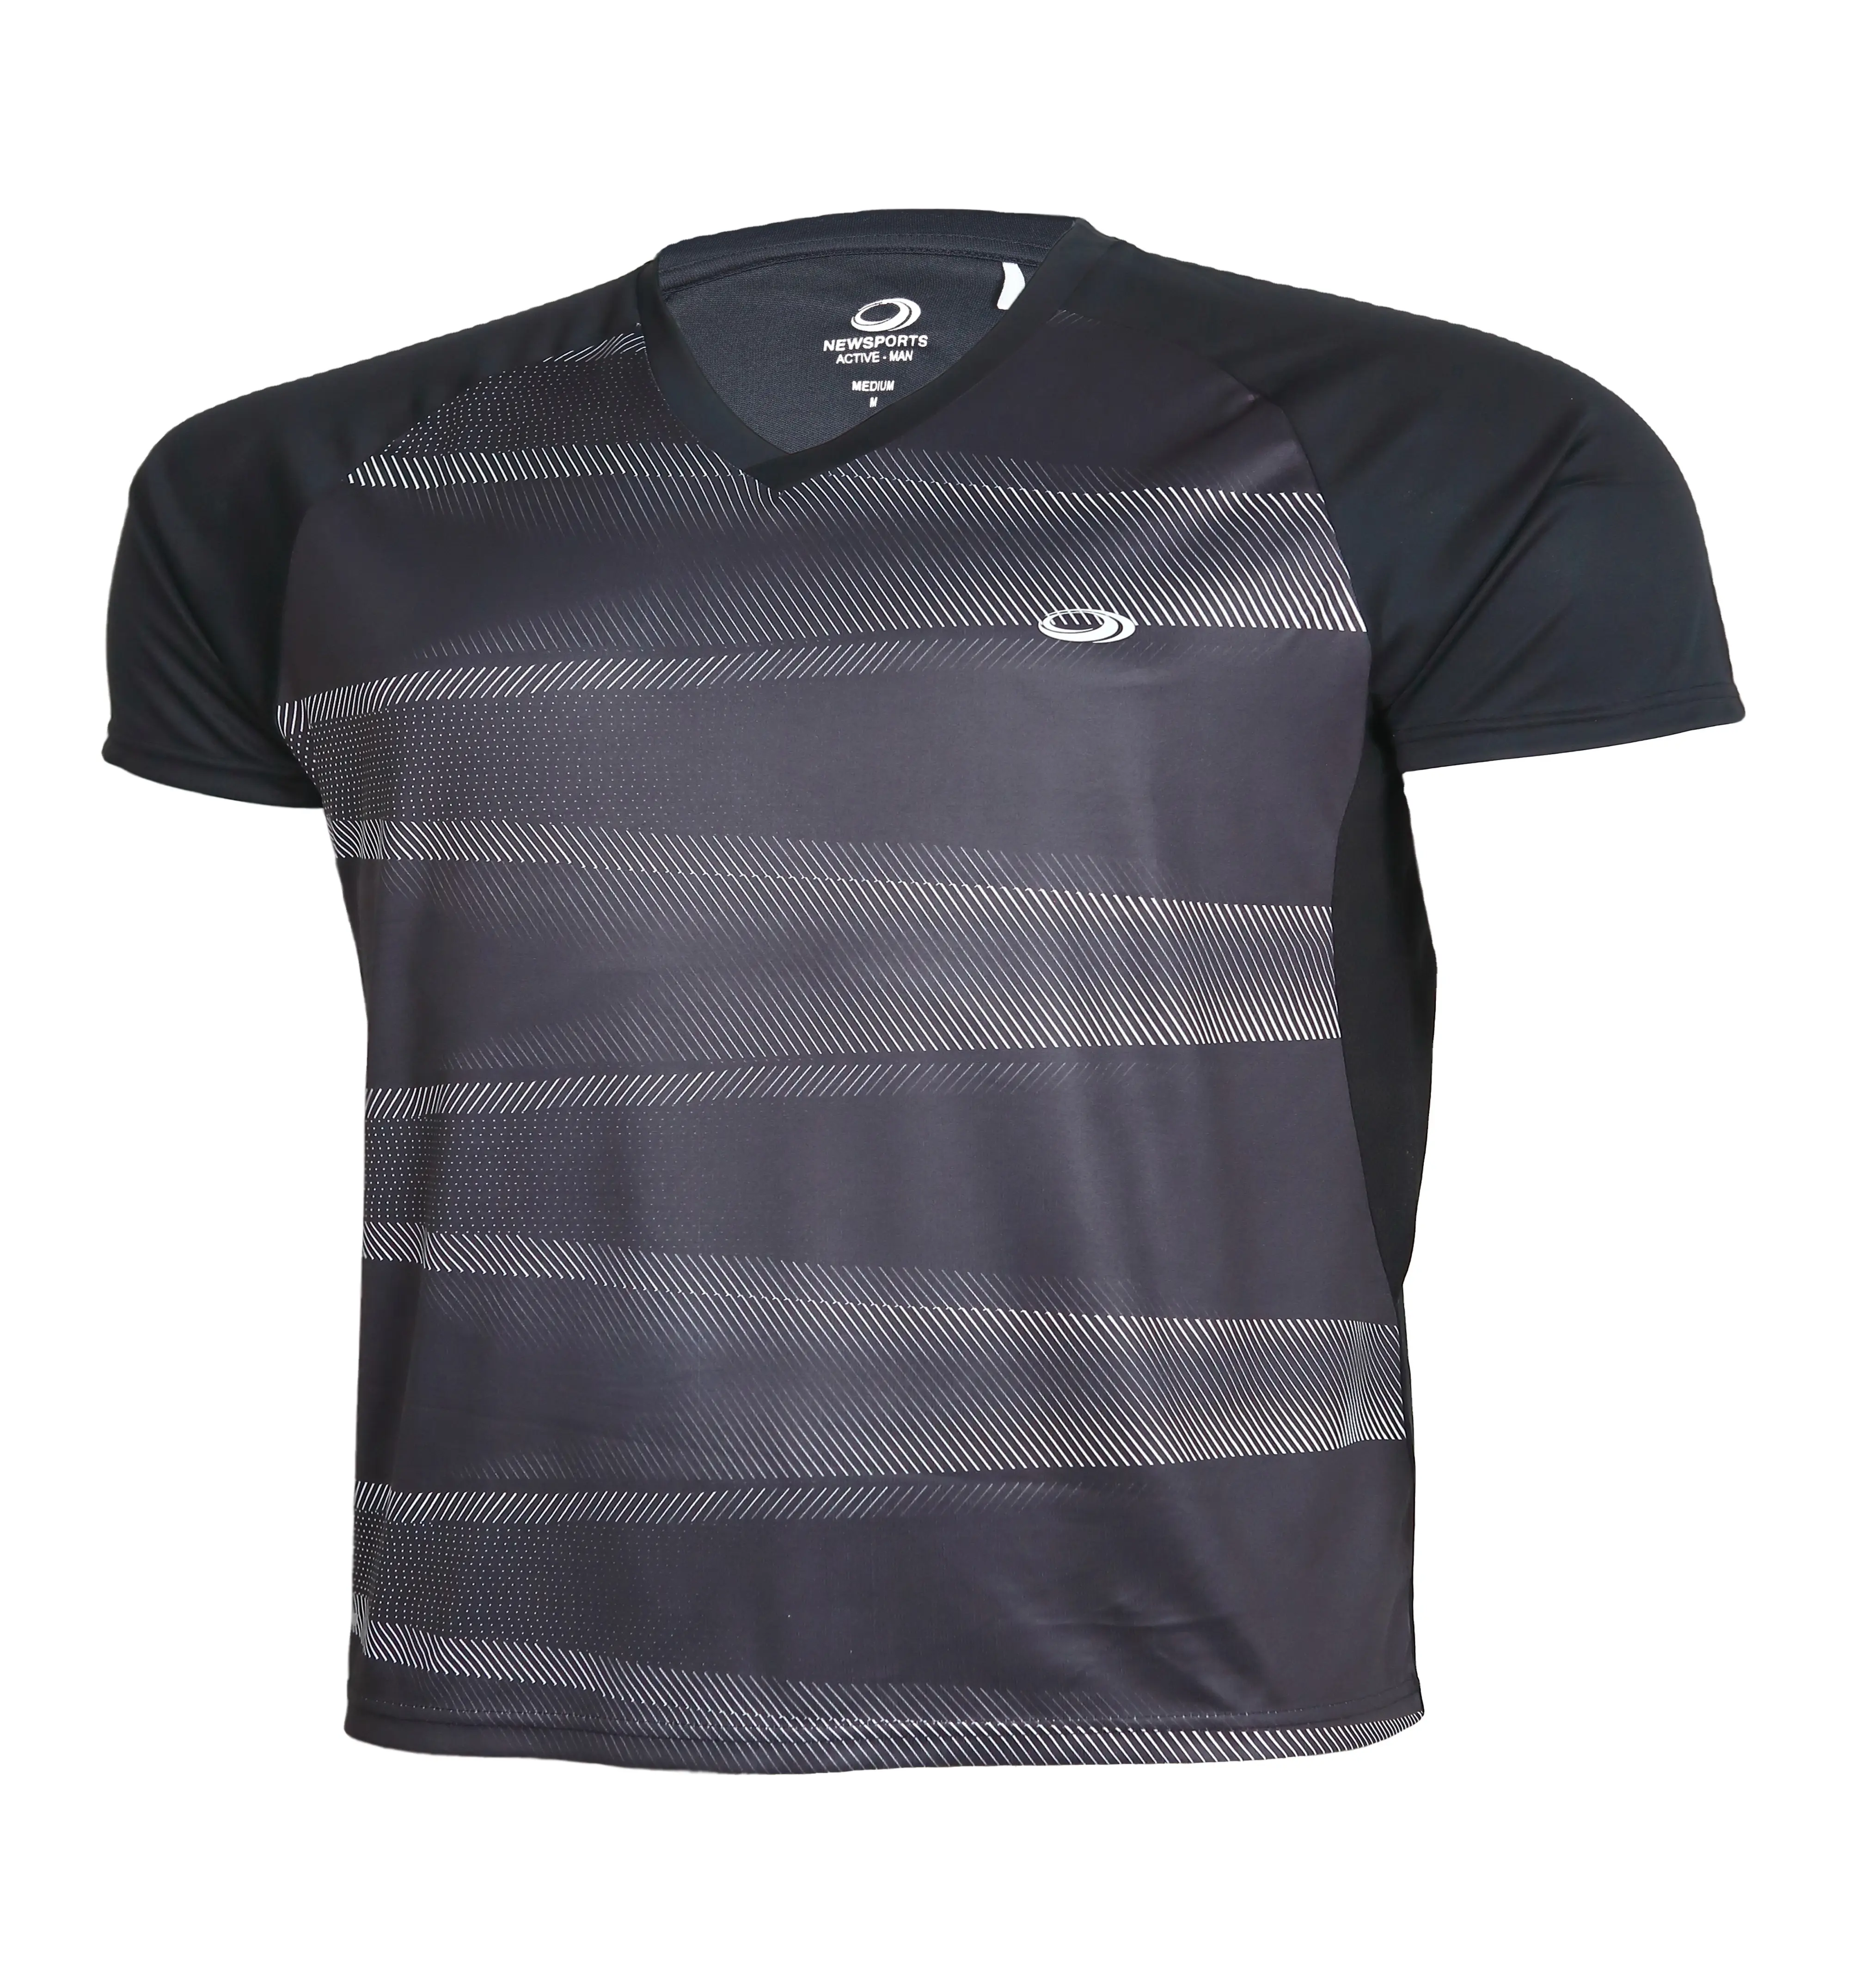 100% Polyester Single Jersey 140 Gramm Kurzarm o Hals Sublimation gedruckt Männer hochwertige T-Shirt